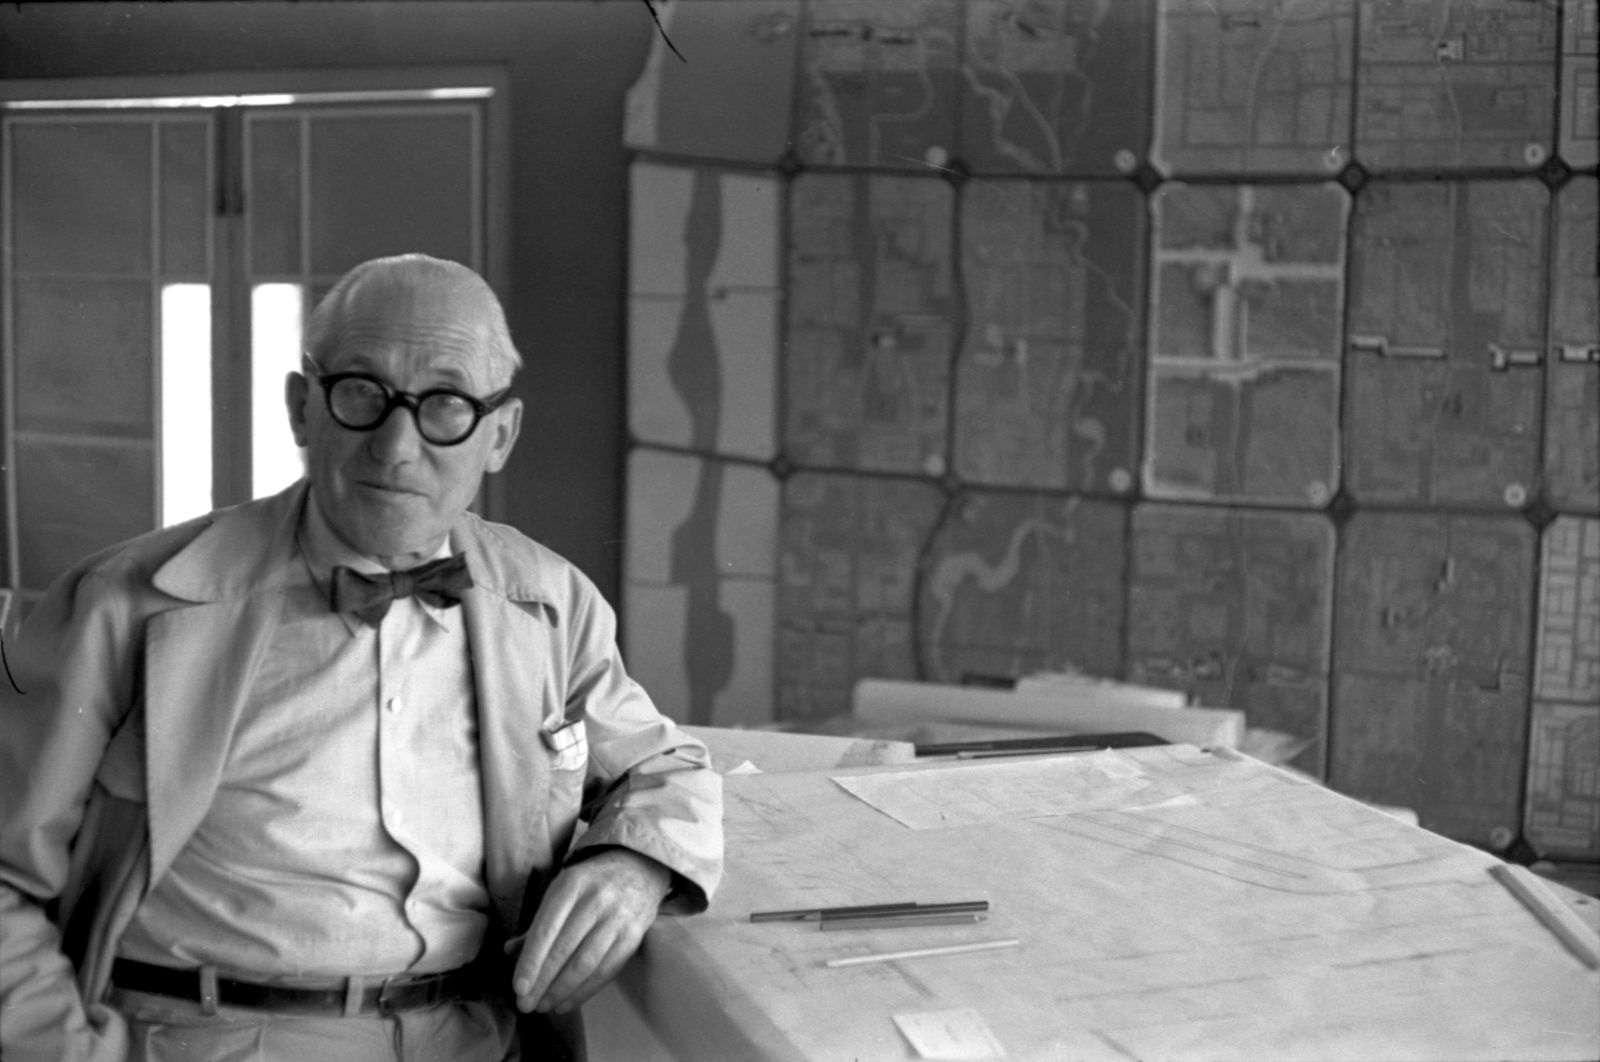 Der Architekt Le Corbusier schaut direkt in die Kamera und stützt sich mit dem Ellenbogen auf einen Entwurf